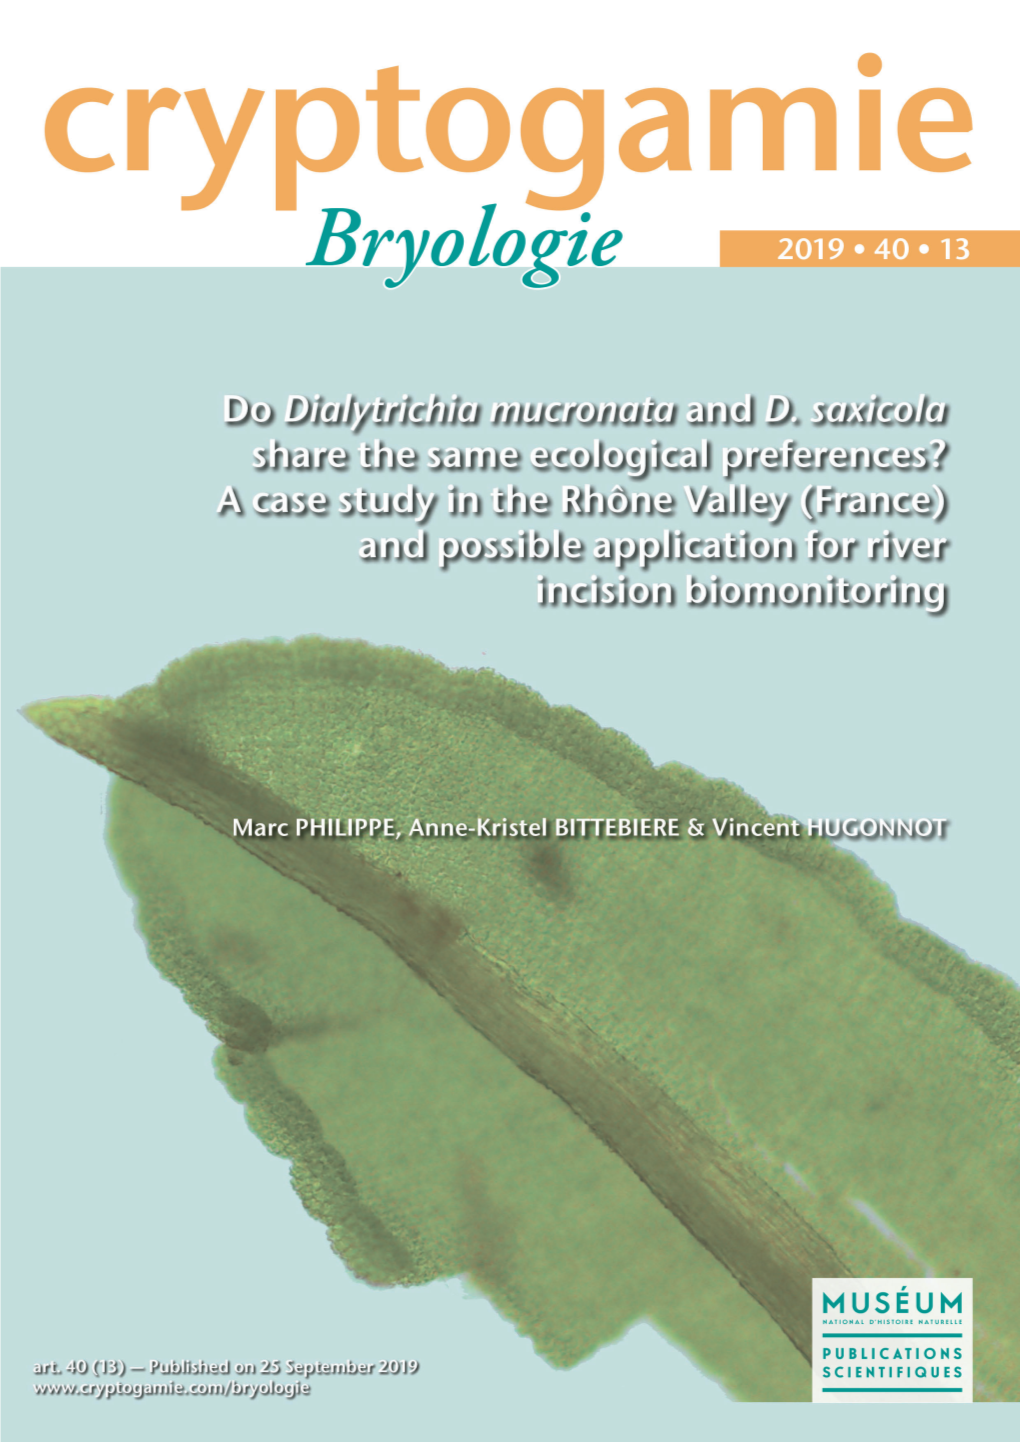 Bryologieryologie 2019 ● 40 ● 13 DIRECTEUR DE LA PUBLICATION : Bruno David, Président Du Muséum National D’Histoire Naturelle